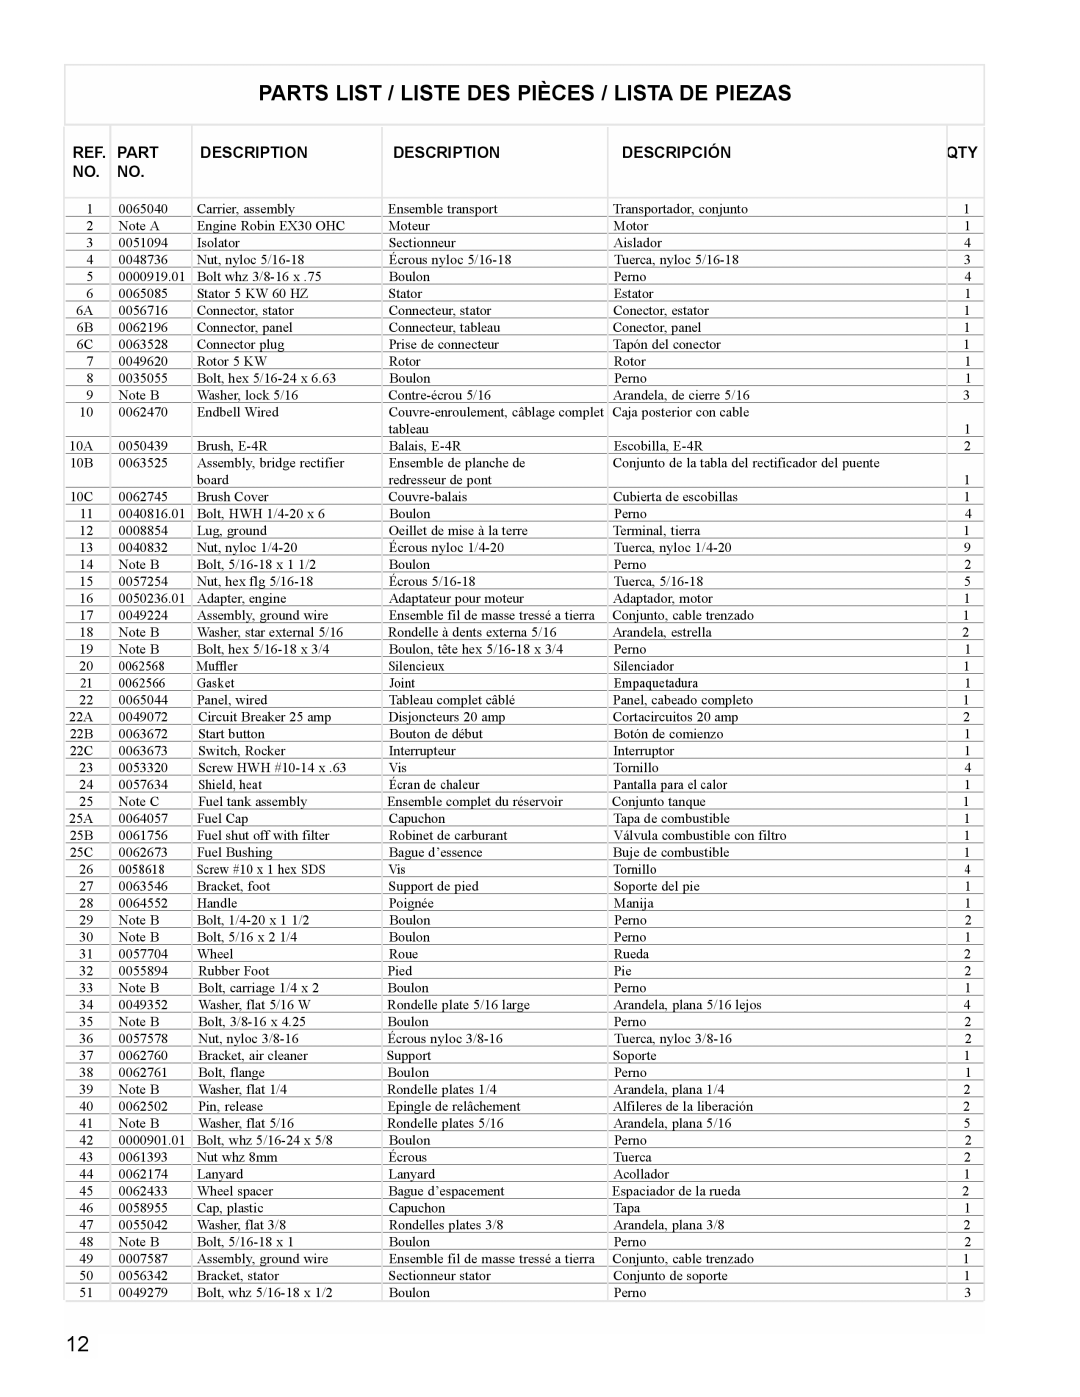 Powermate PM0435004 manual Parts List / Liste Des Pièces / Lista De Piezas, Description, Descripción 